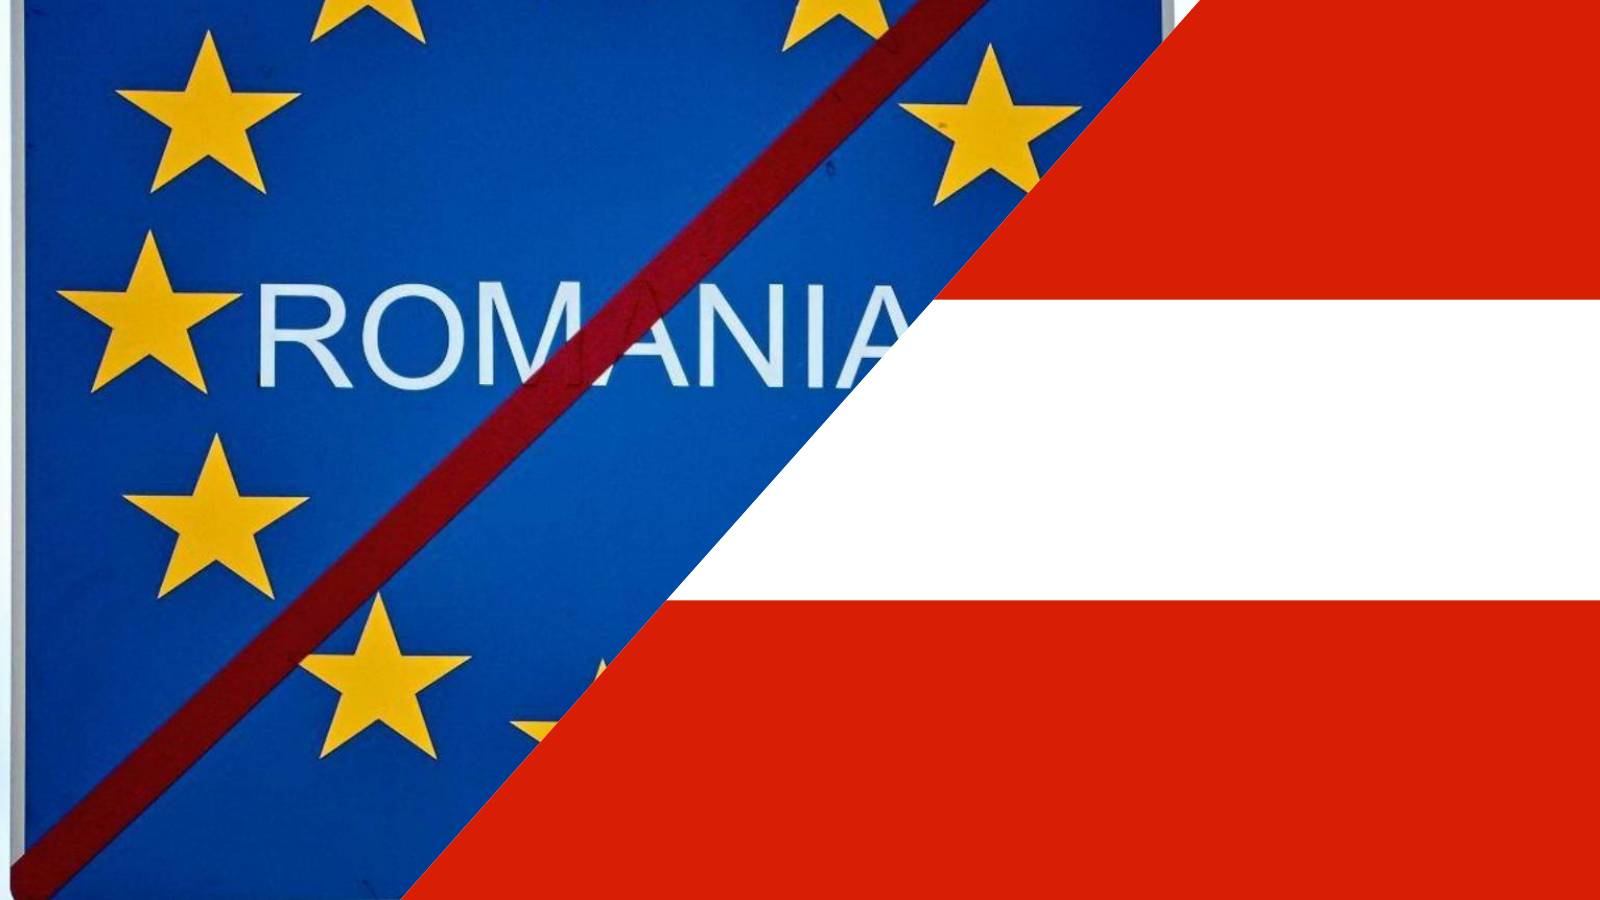 Oostenrijk deelt de reden van de vice-kanselier om de toetreding van Roemenië tot Schengen te blokkeren